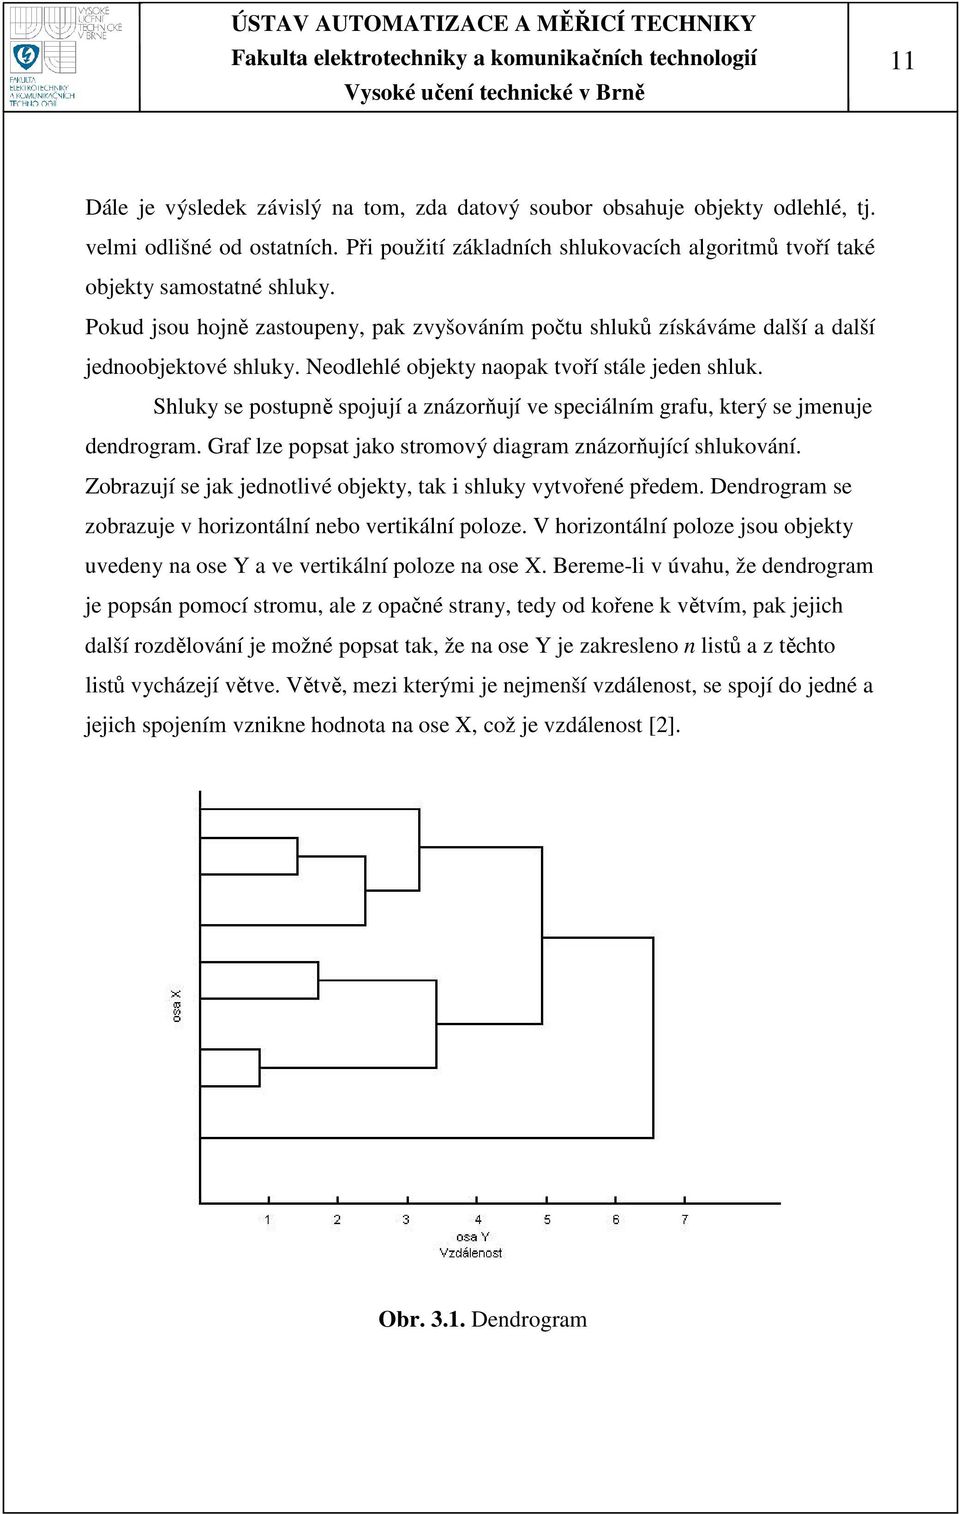 Shluky se postupně spojují a znázorňují ve speciálním grafu, který se jmenuje dendrogram. Graf lze popsat jako stromový diagram znázorňující shlukování.